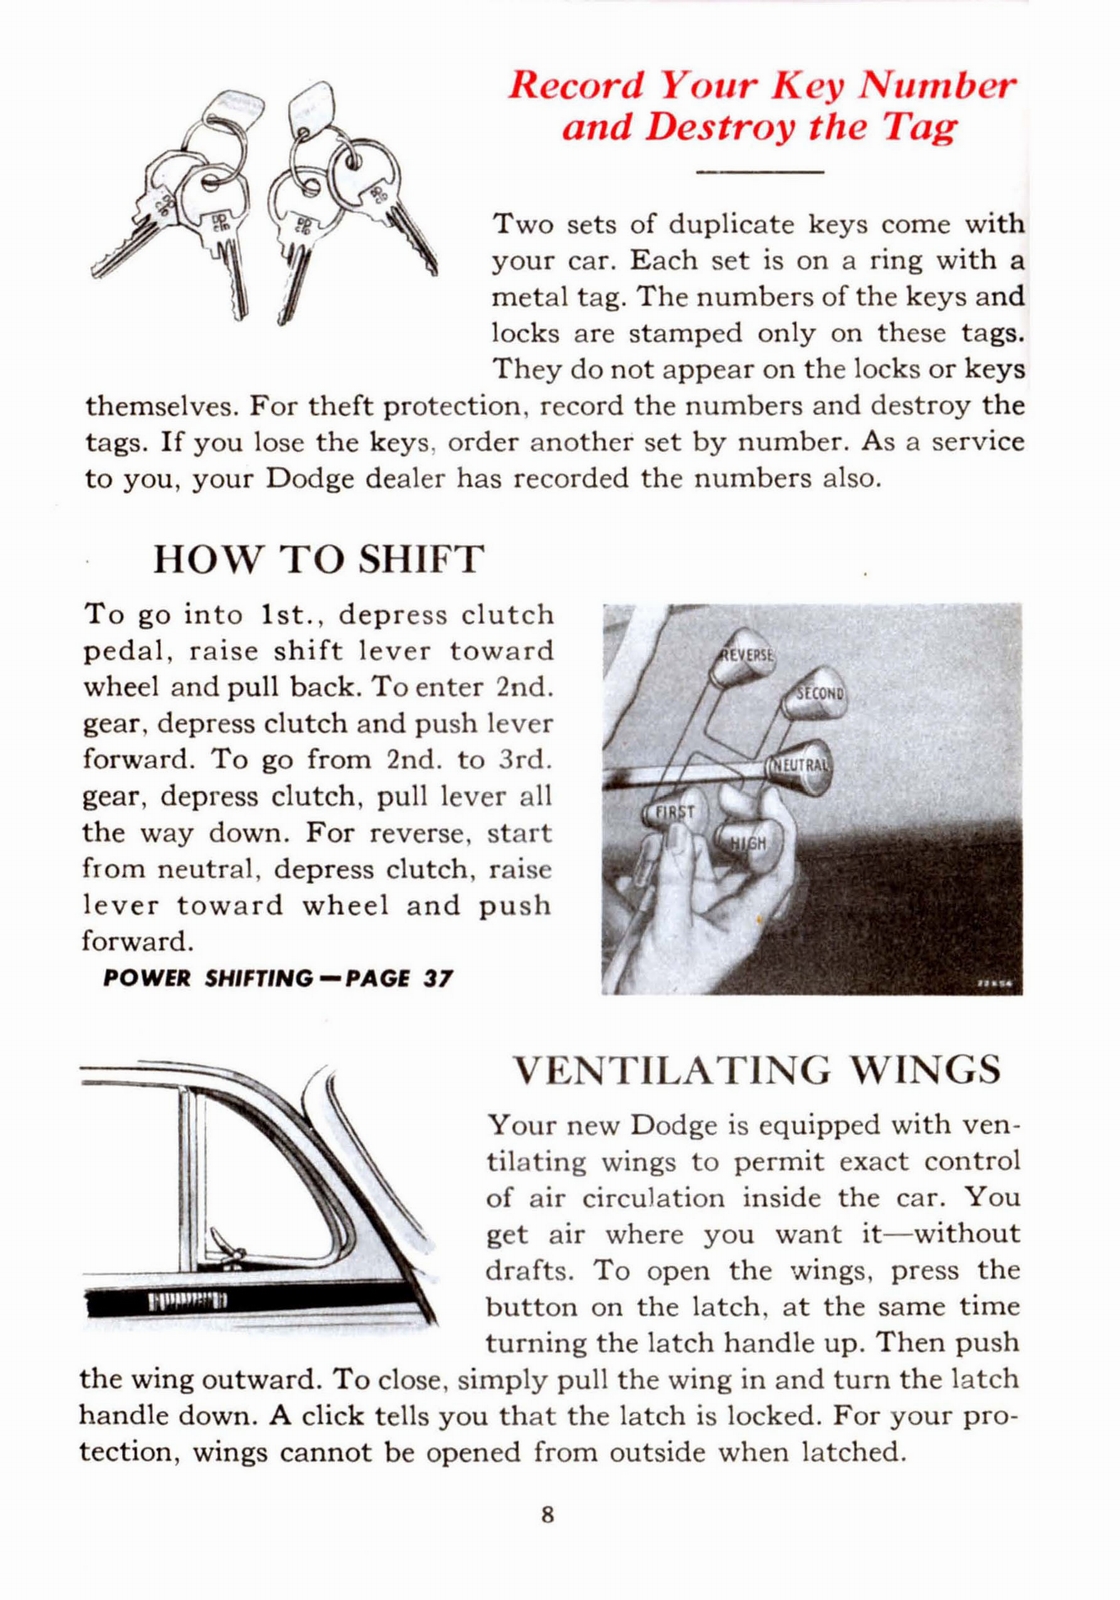 n_1941 Dodge Owners Manual-08.jpg